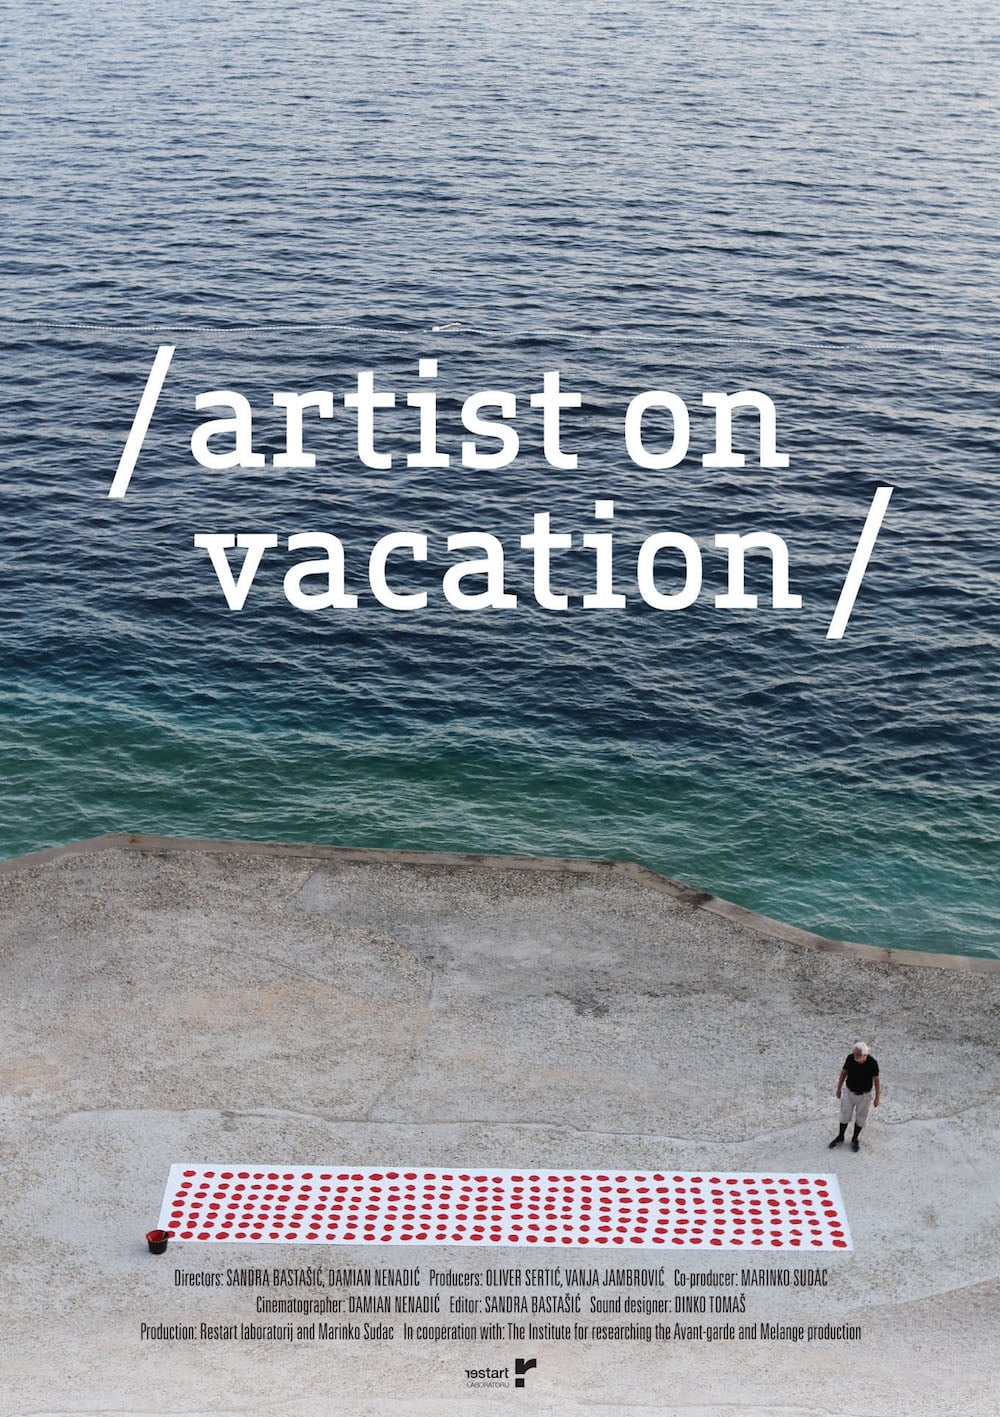 Artist on Vacation